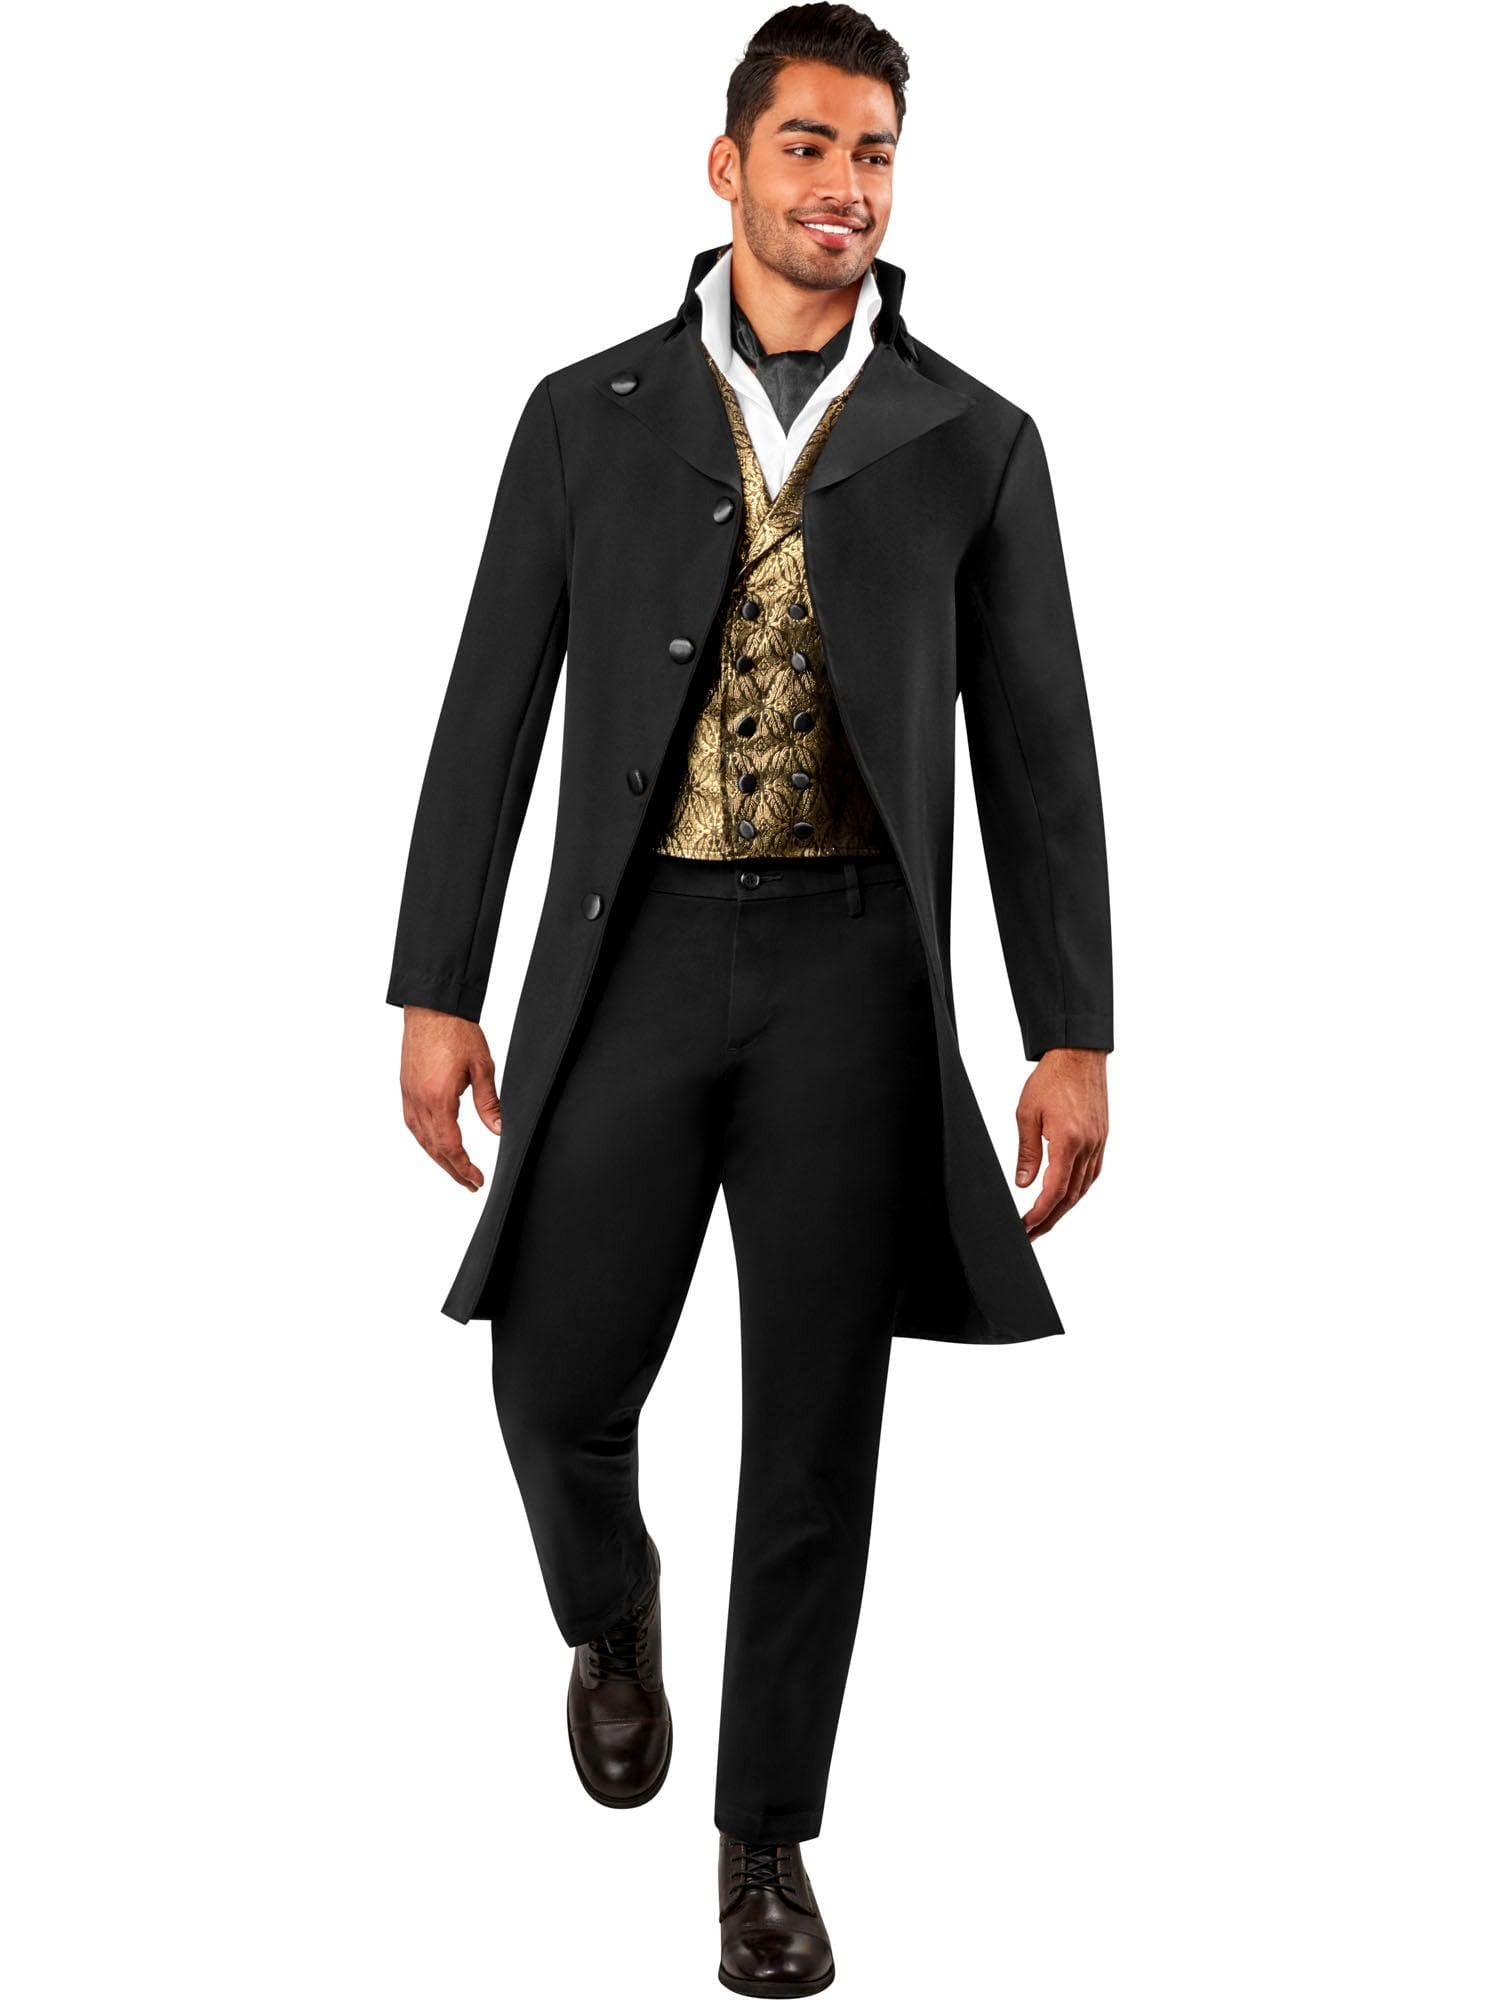 Men's Regency Duke Costume - costumes.com